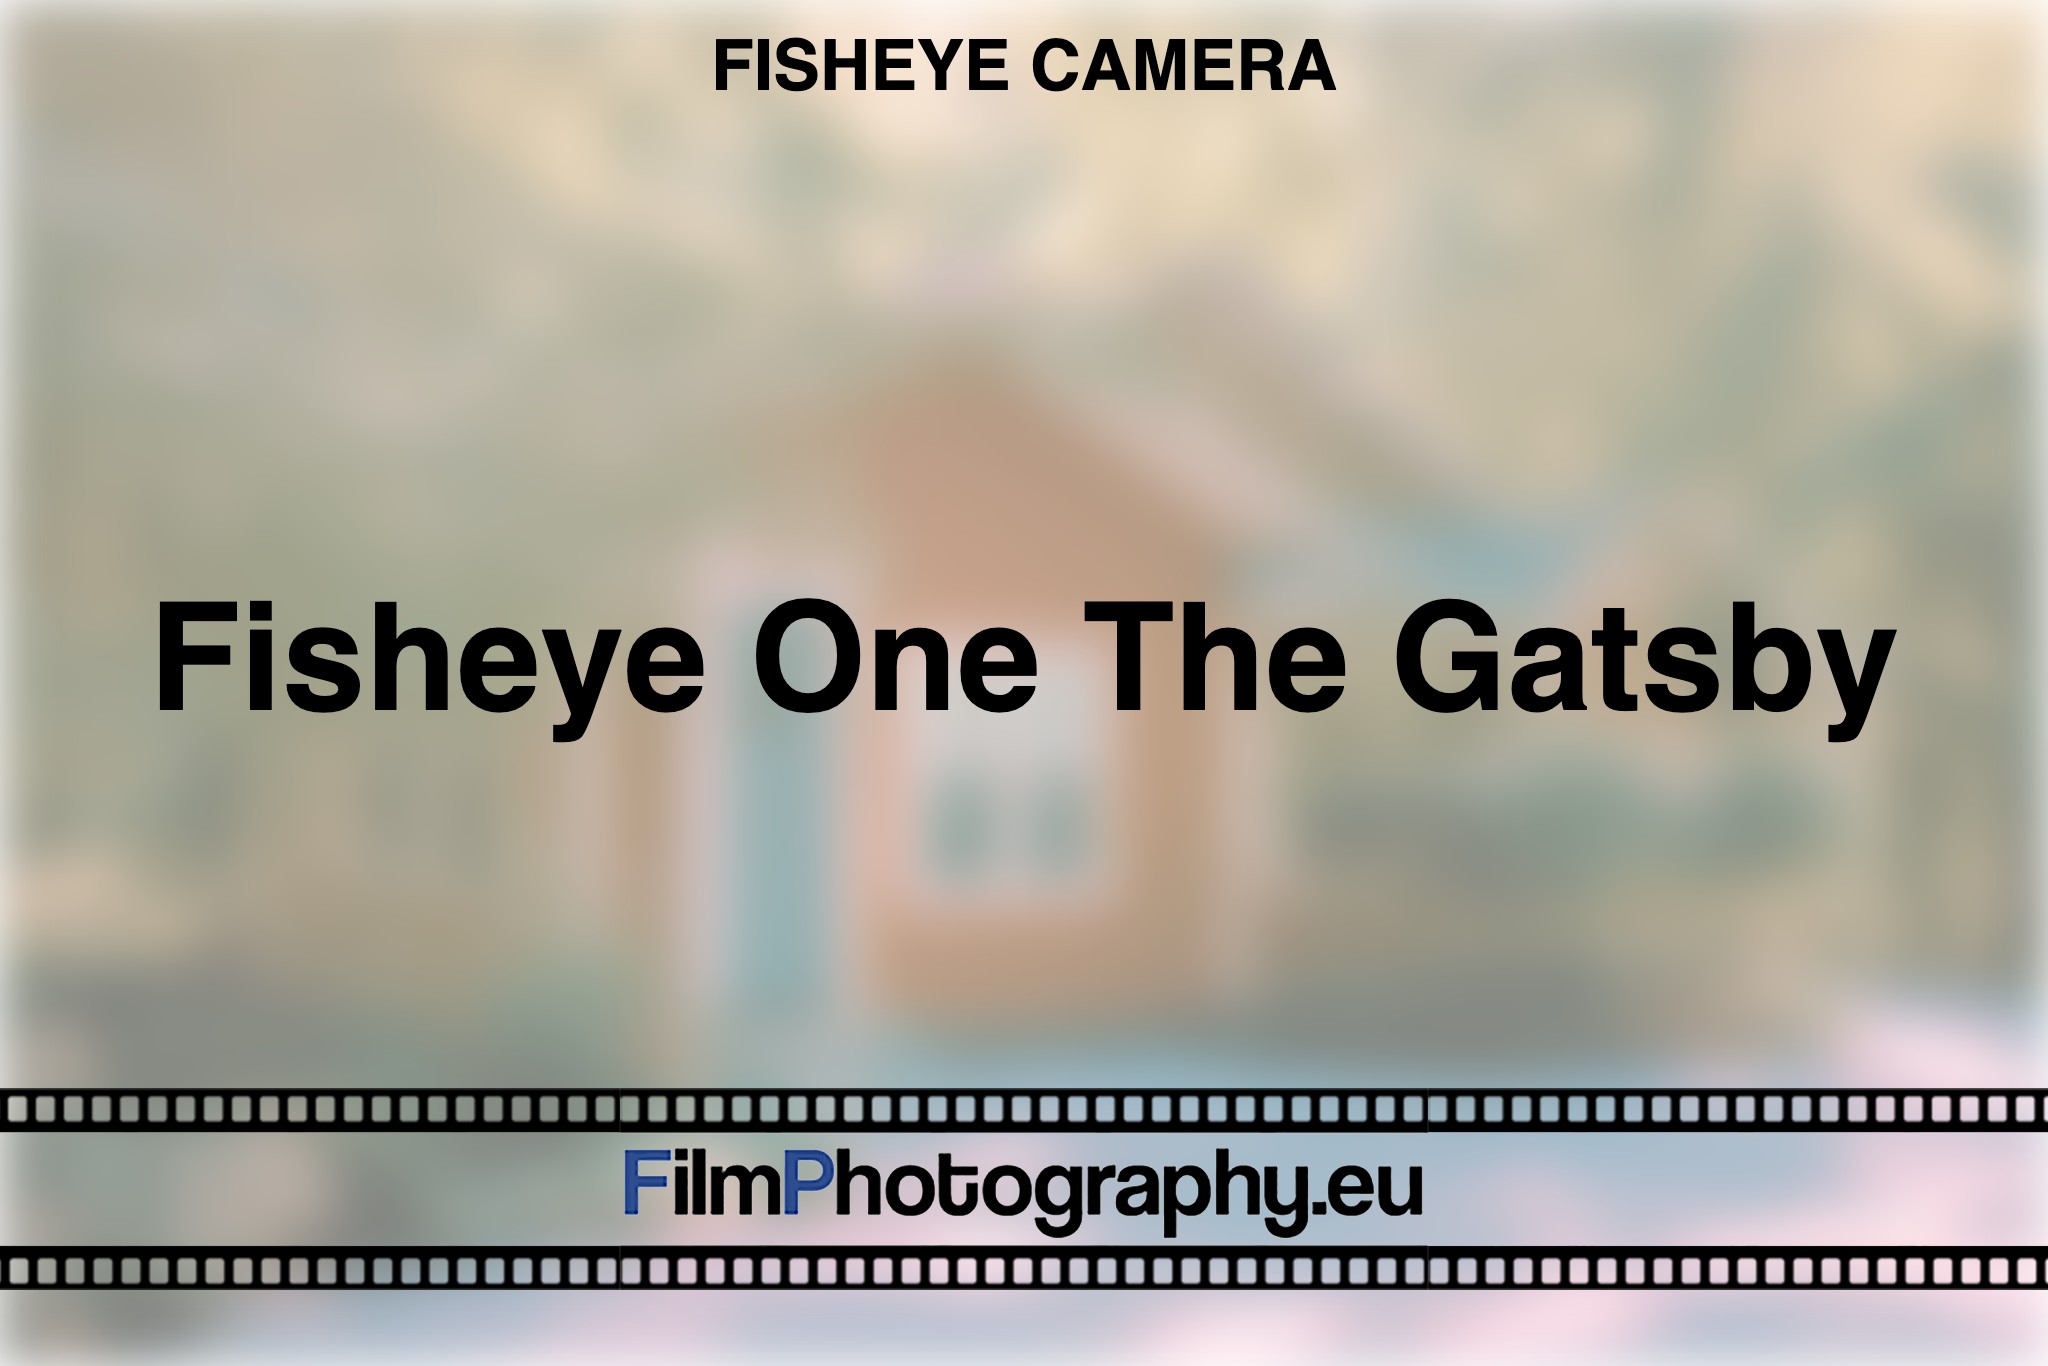 fisheye-one-the-gatsby-fisheye-camera-bnv